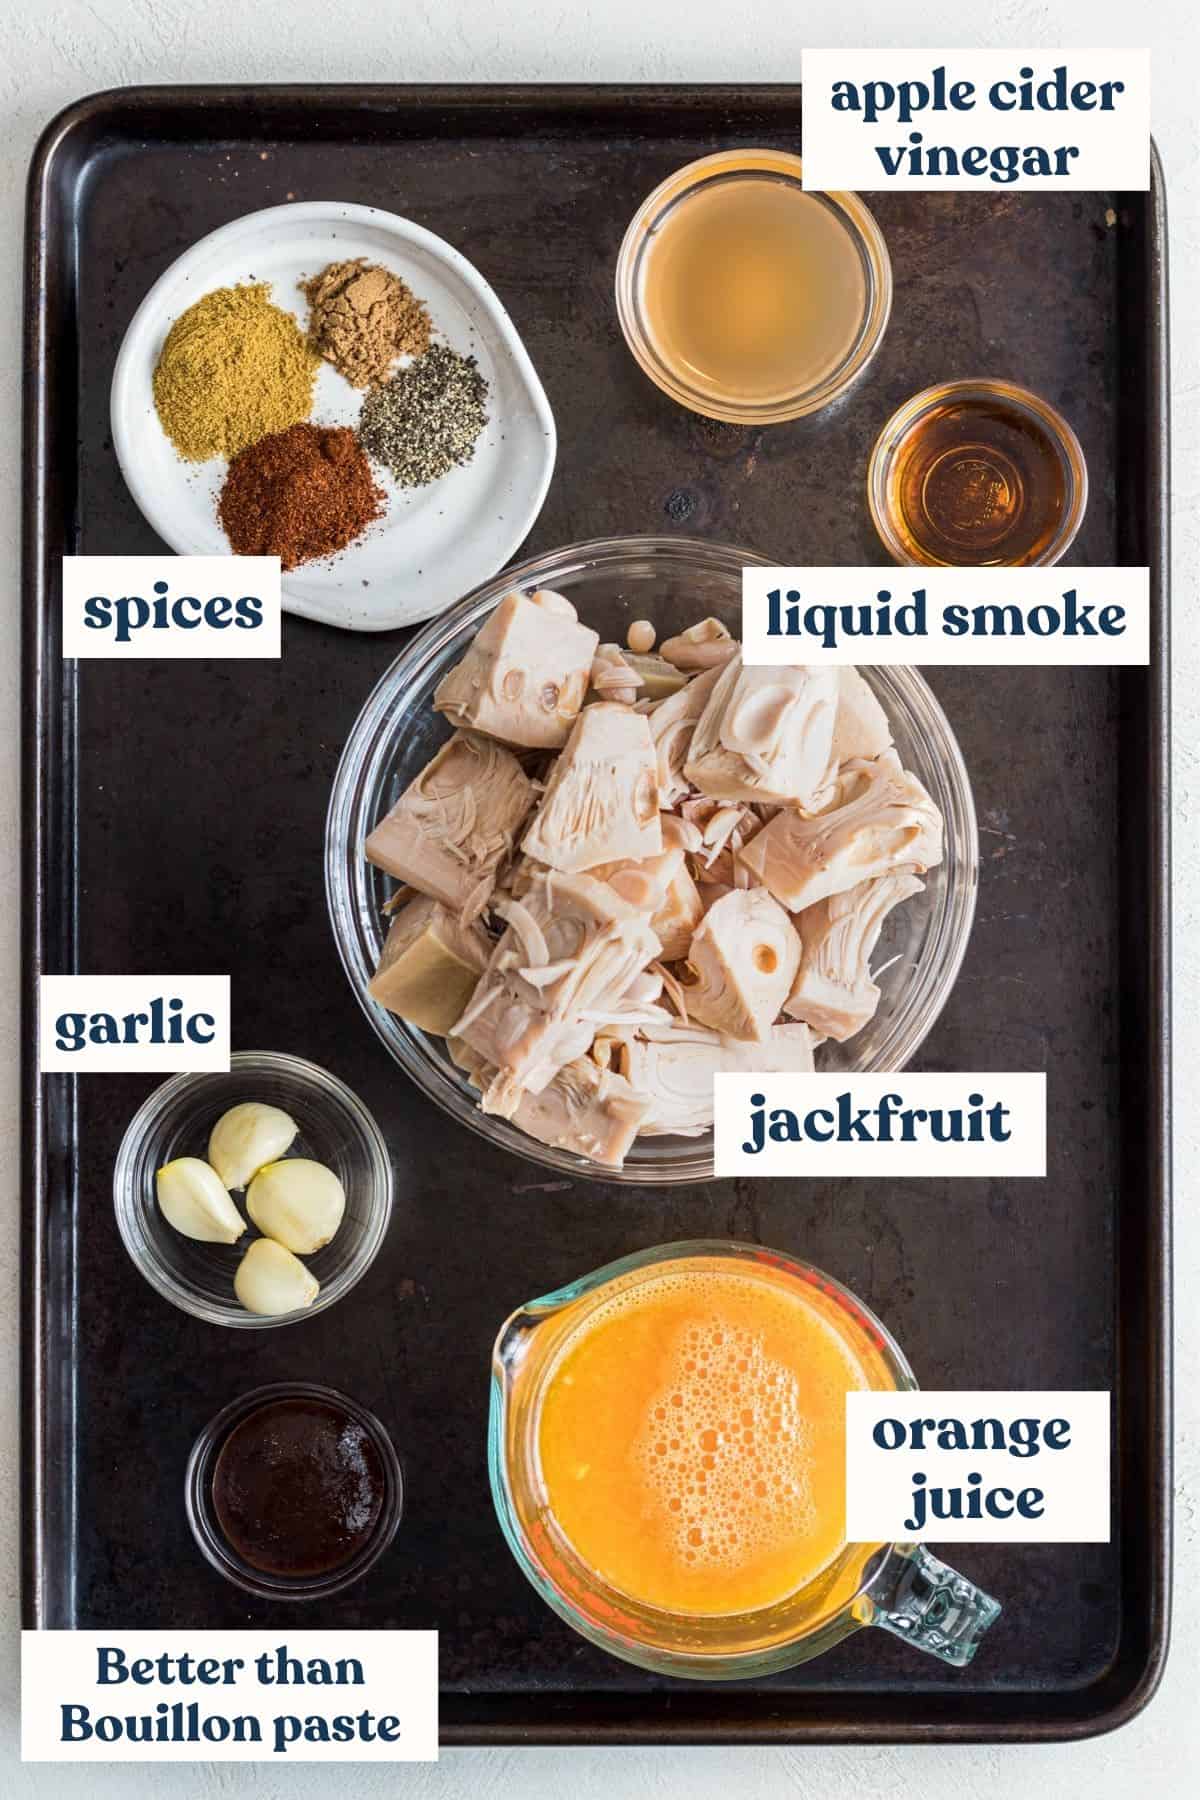 Jackfruit carnitas ingredients with labels on baking sheet.